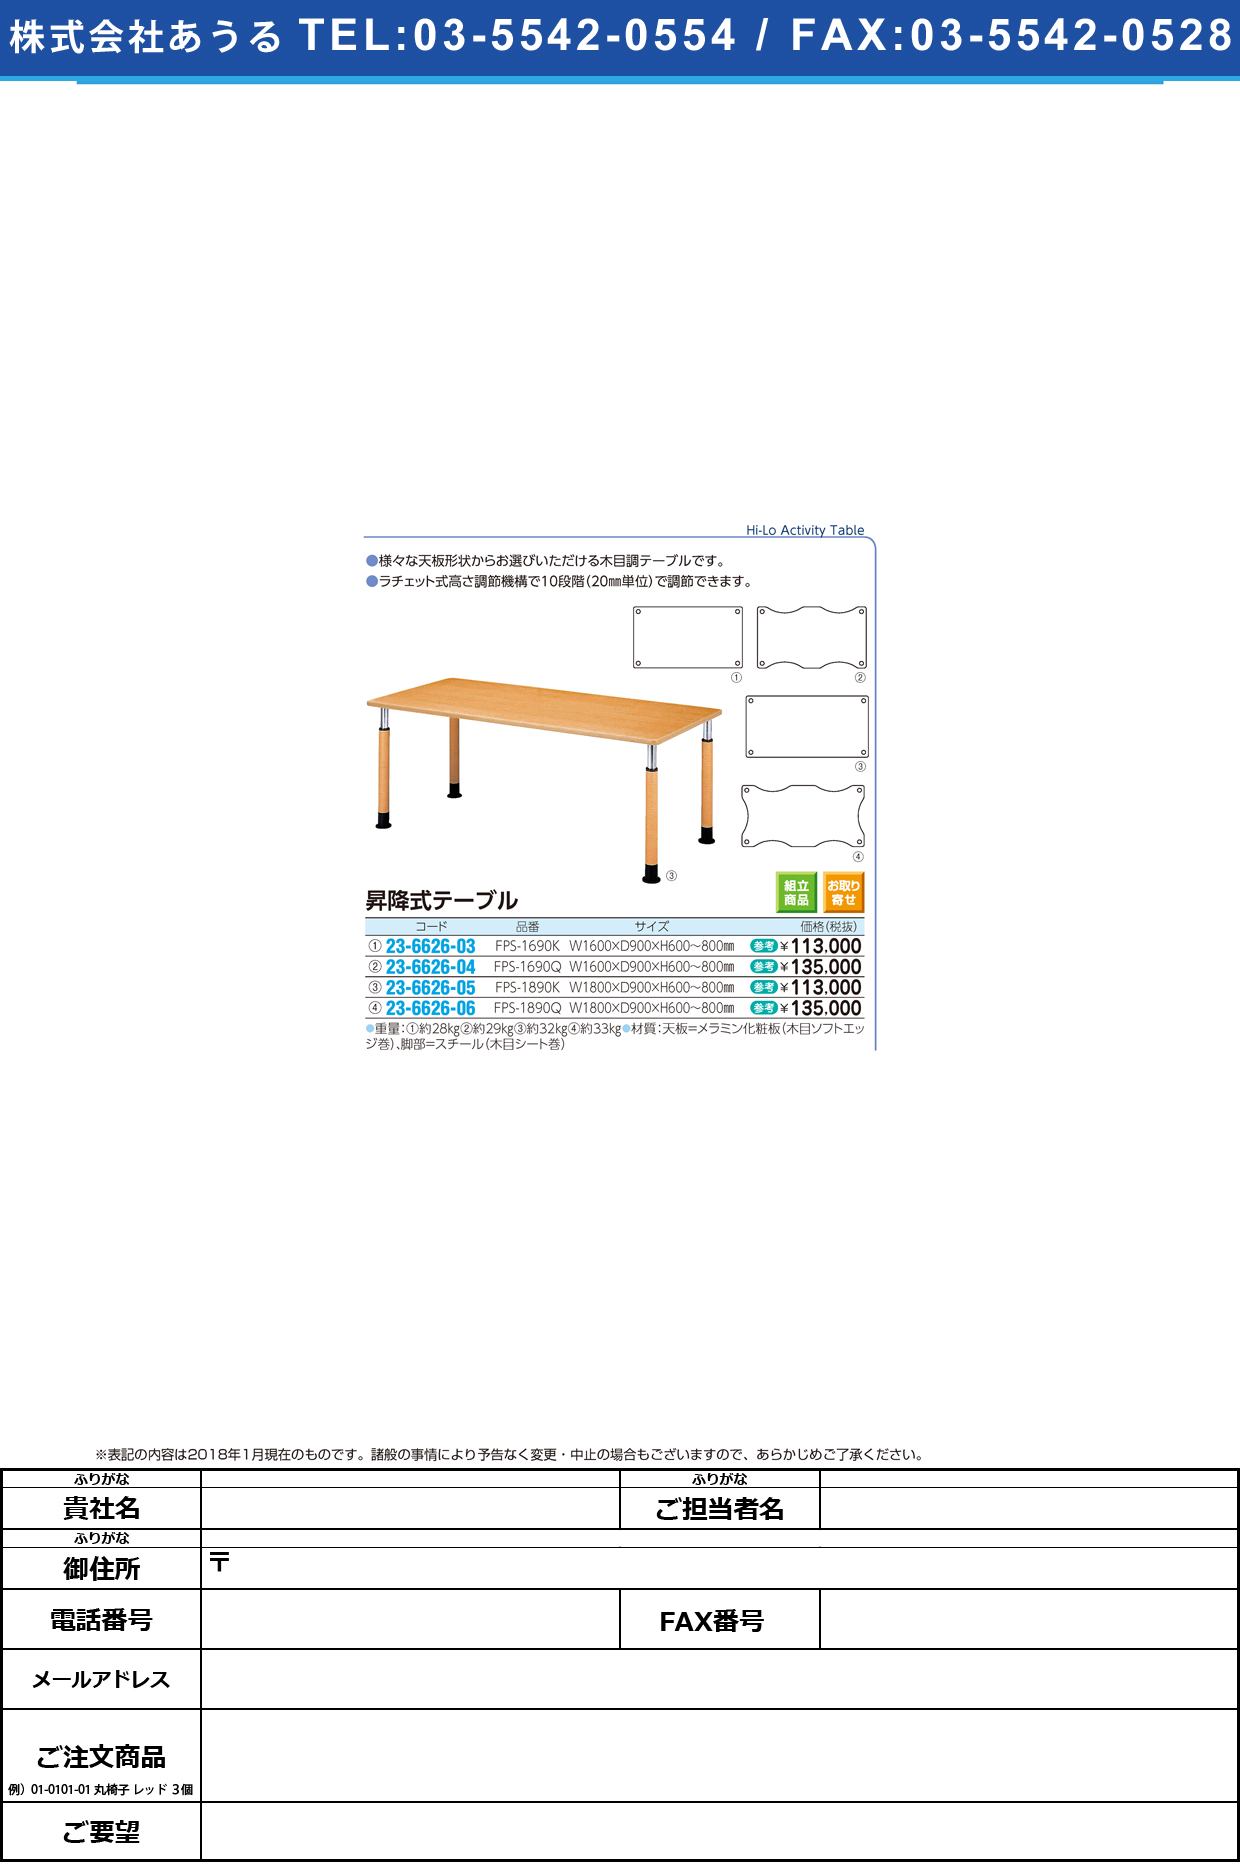 (23-6626-06)昇降式テーブル FPS-1890Q(W180XD90CM ｼｮｳｺｳｼｷﾃｰﾌﾞﾙ【1台単位】【2019年カタログ商品】